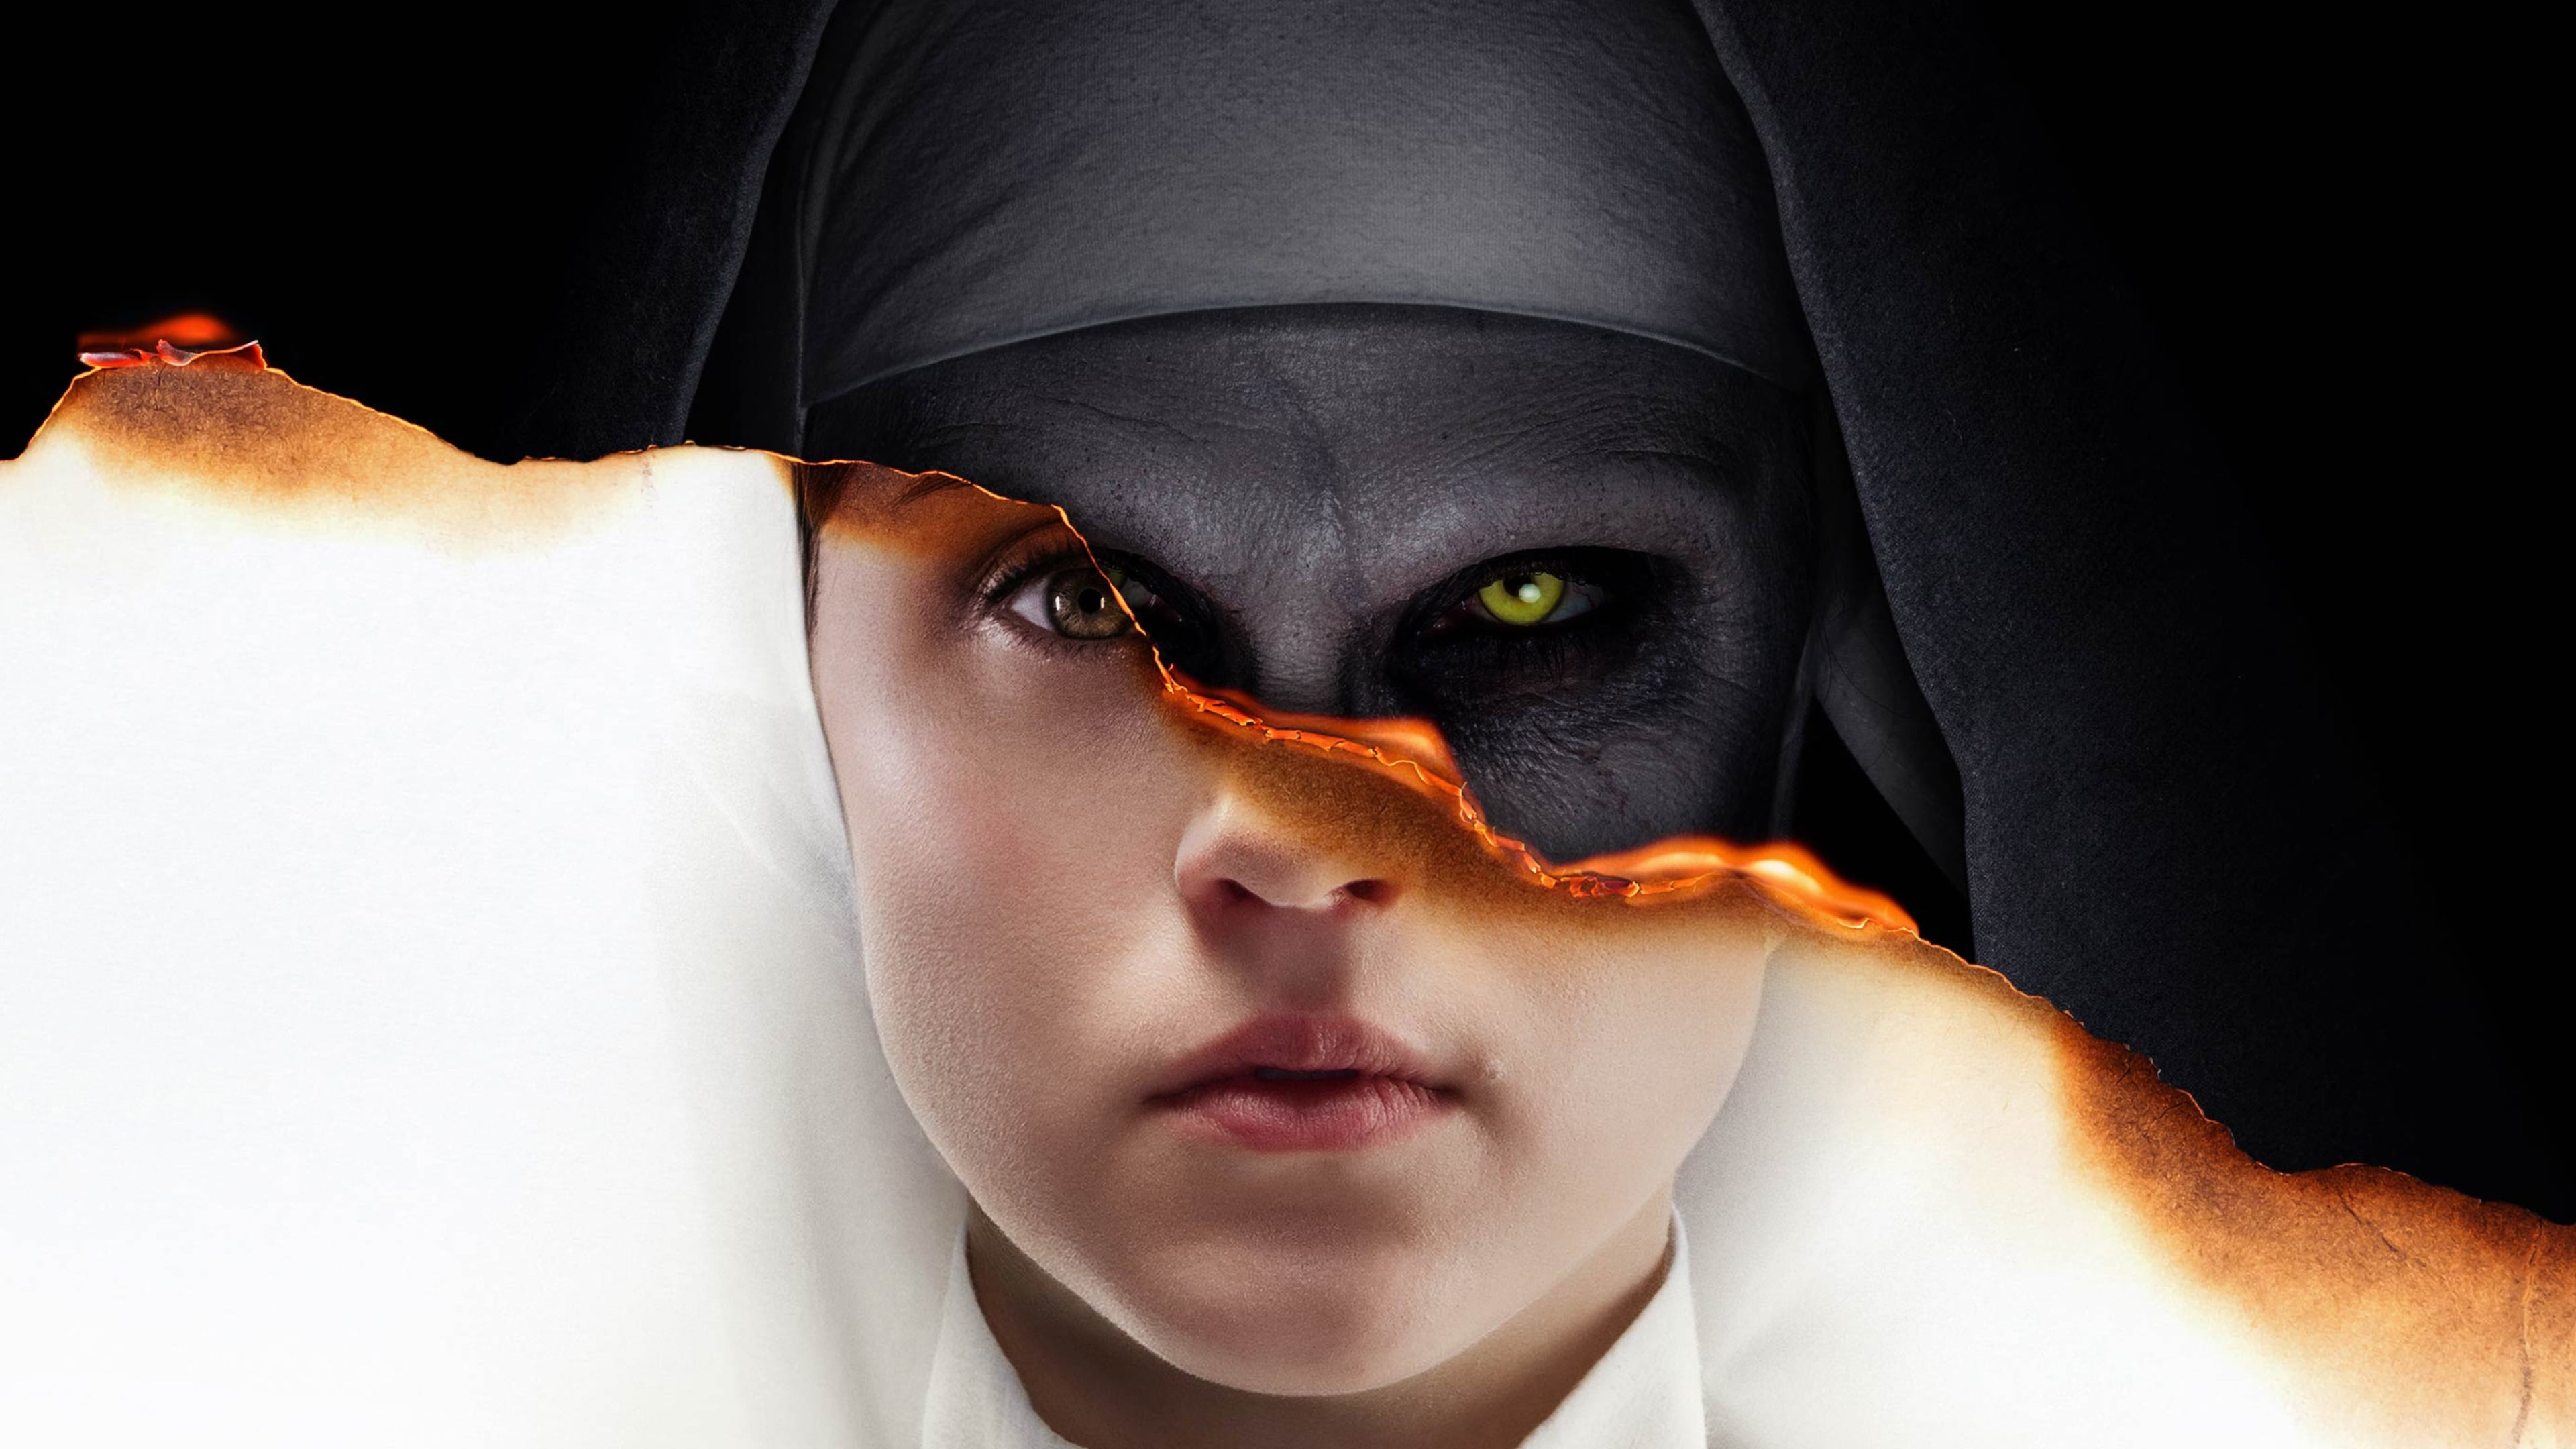 The Nun - La vocazione del male